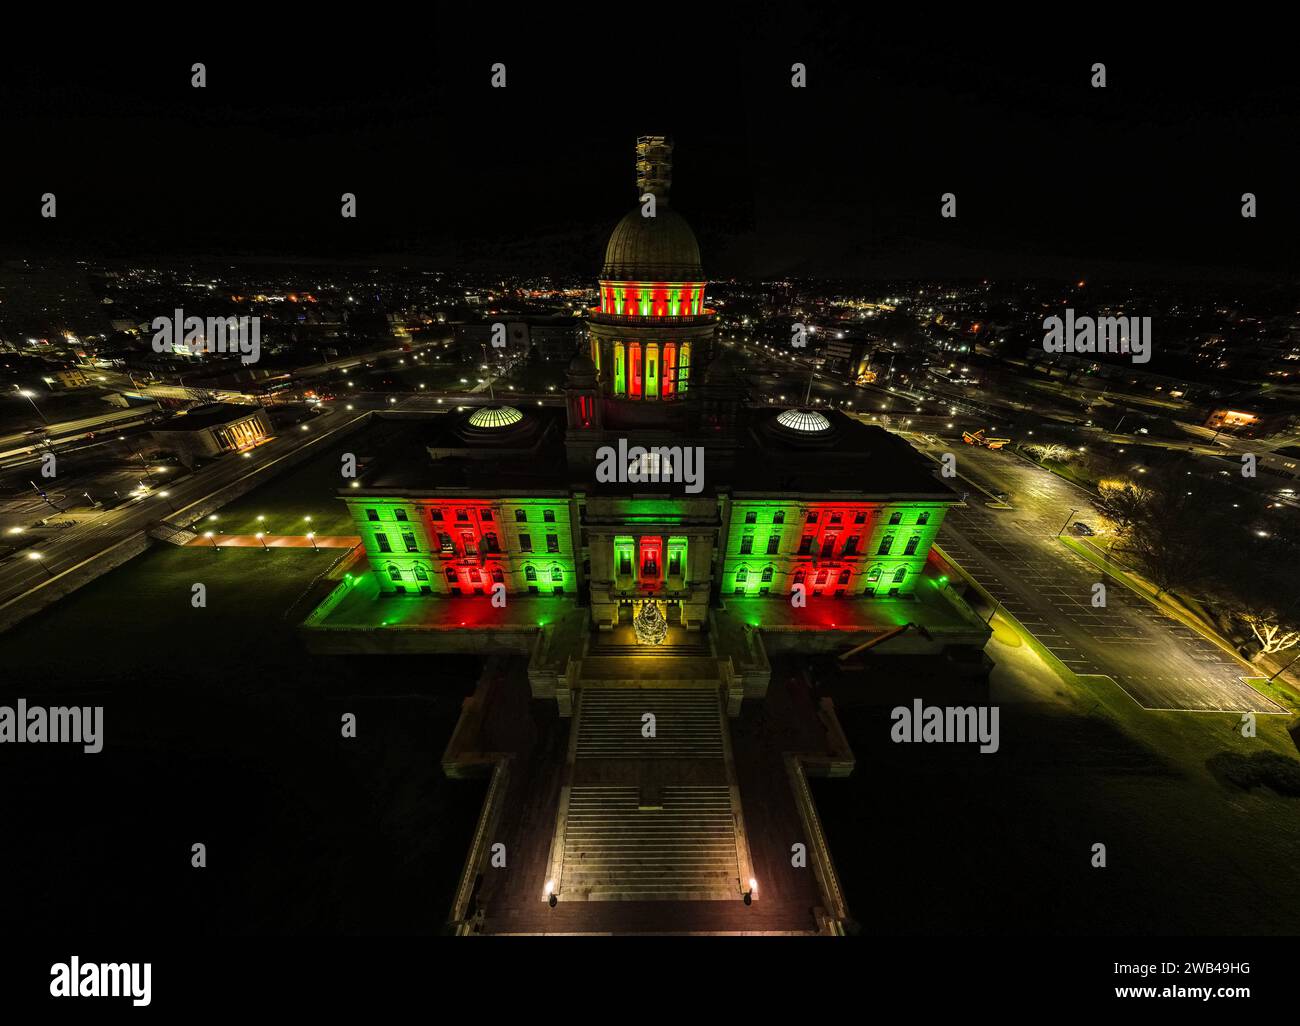 Scatto notturno di una torre dell'orologio, illuminato alternativamente da luci rosse e verdi Foto Stock